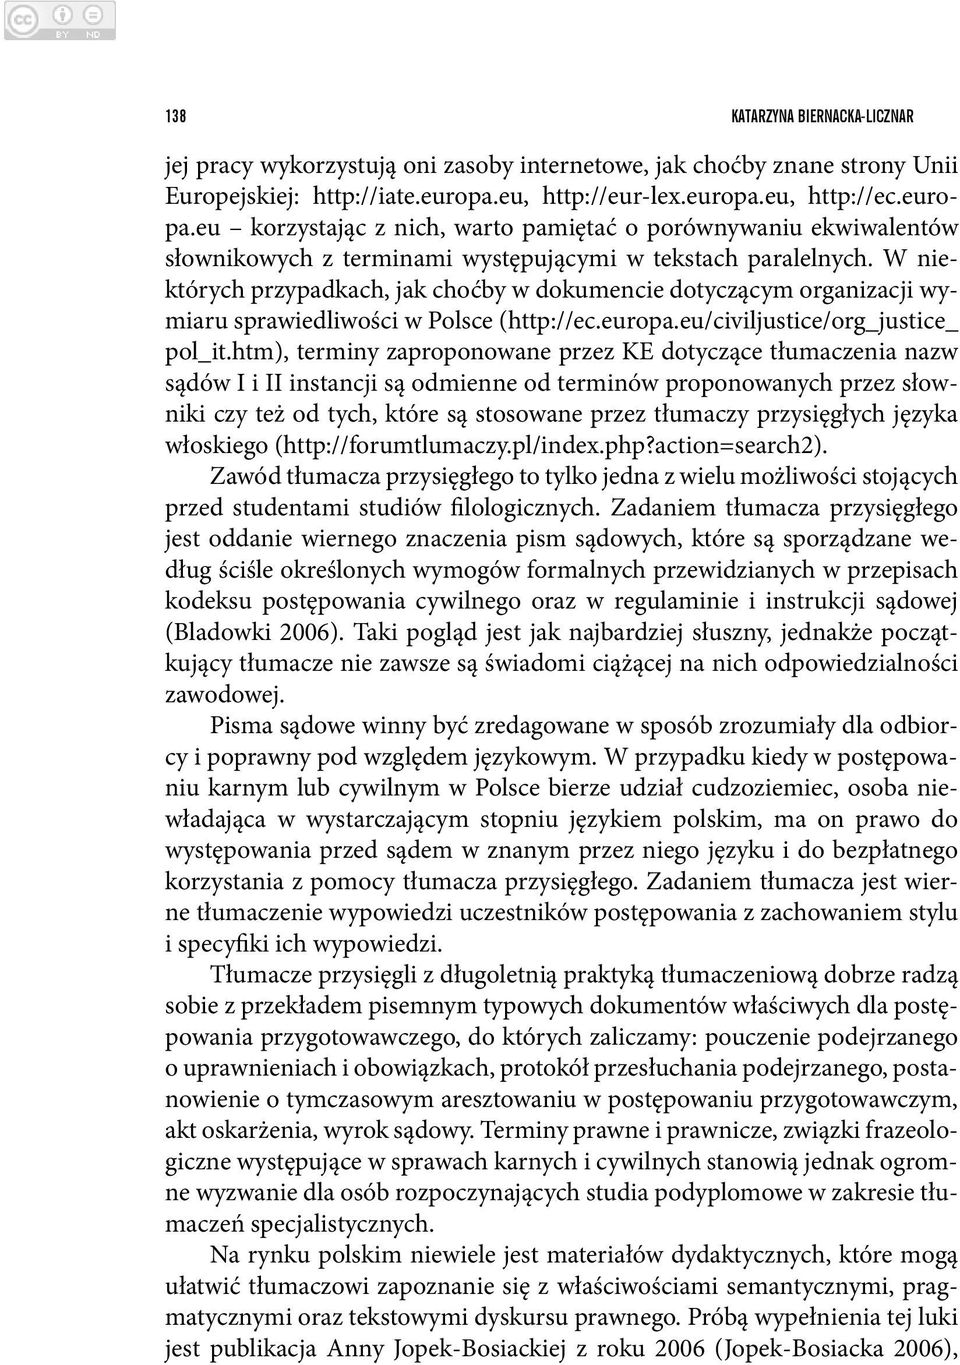 W niektórych przypadkach, jak choćby w dokumencie dotyczącym organizacji wymiaru sprawiedliwości w Polsce (http://ec.europa.eu/civiljustice/org_justice_ pol_it.